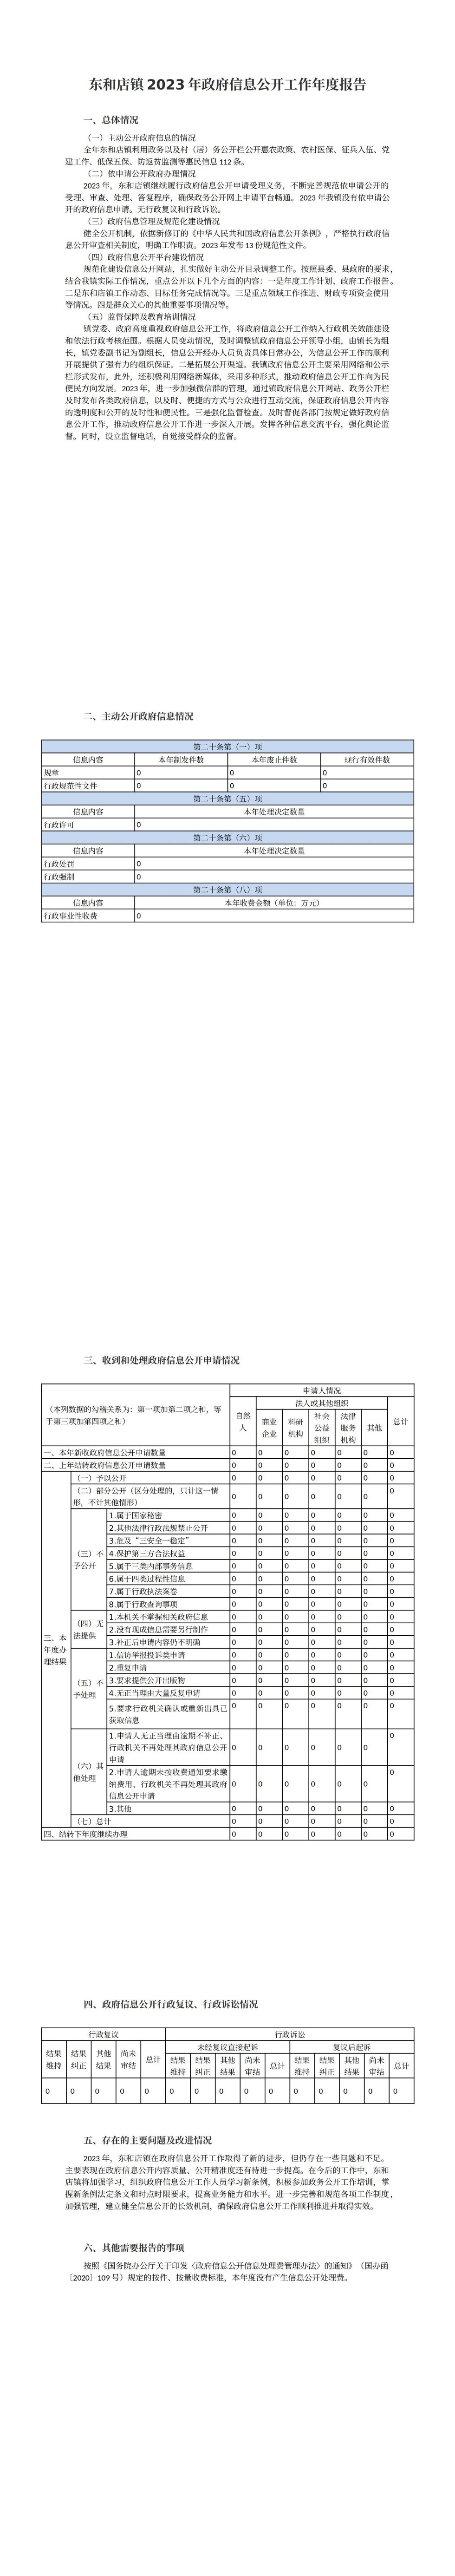 东和店镇2023年政府信息公开工作年度报告 (1)_00.jpg